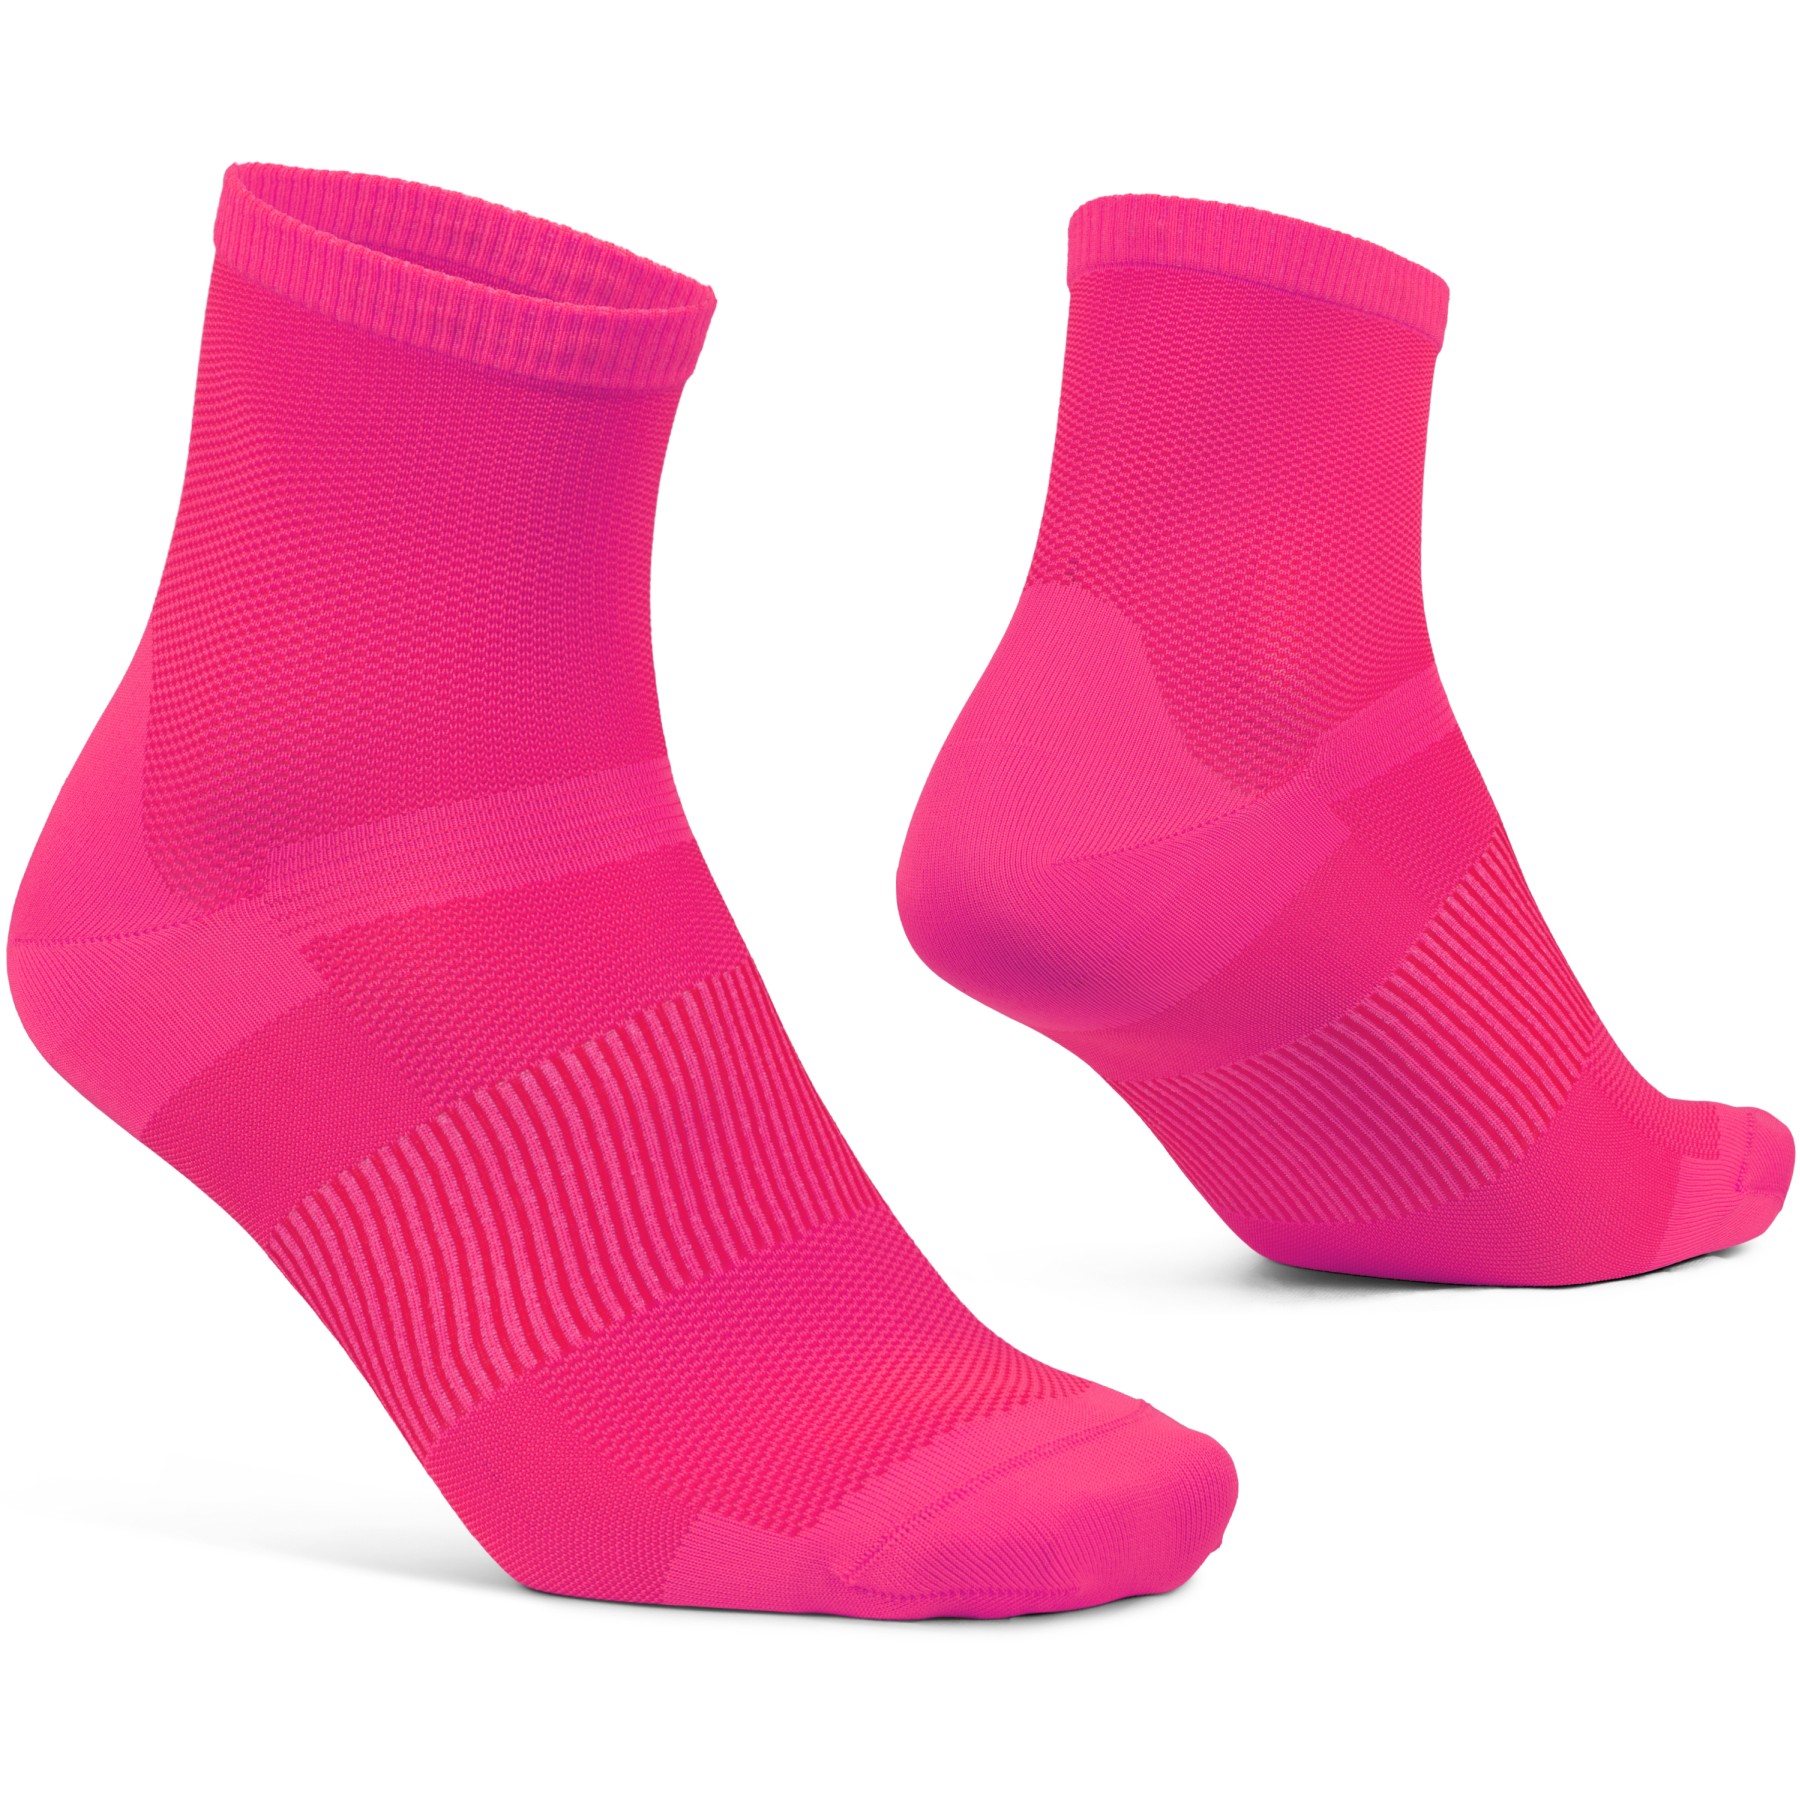 Produktbild von GripGrab Lightweight Airflow Short Socken - Pink Hi-Vis